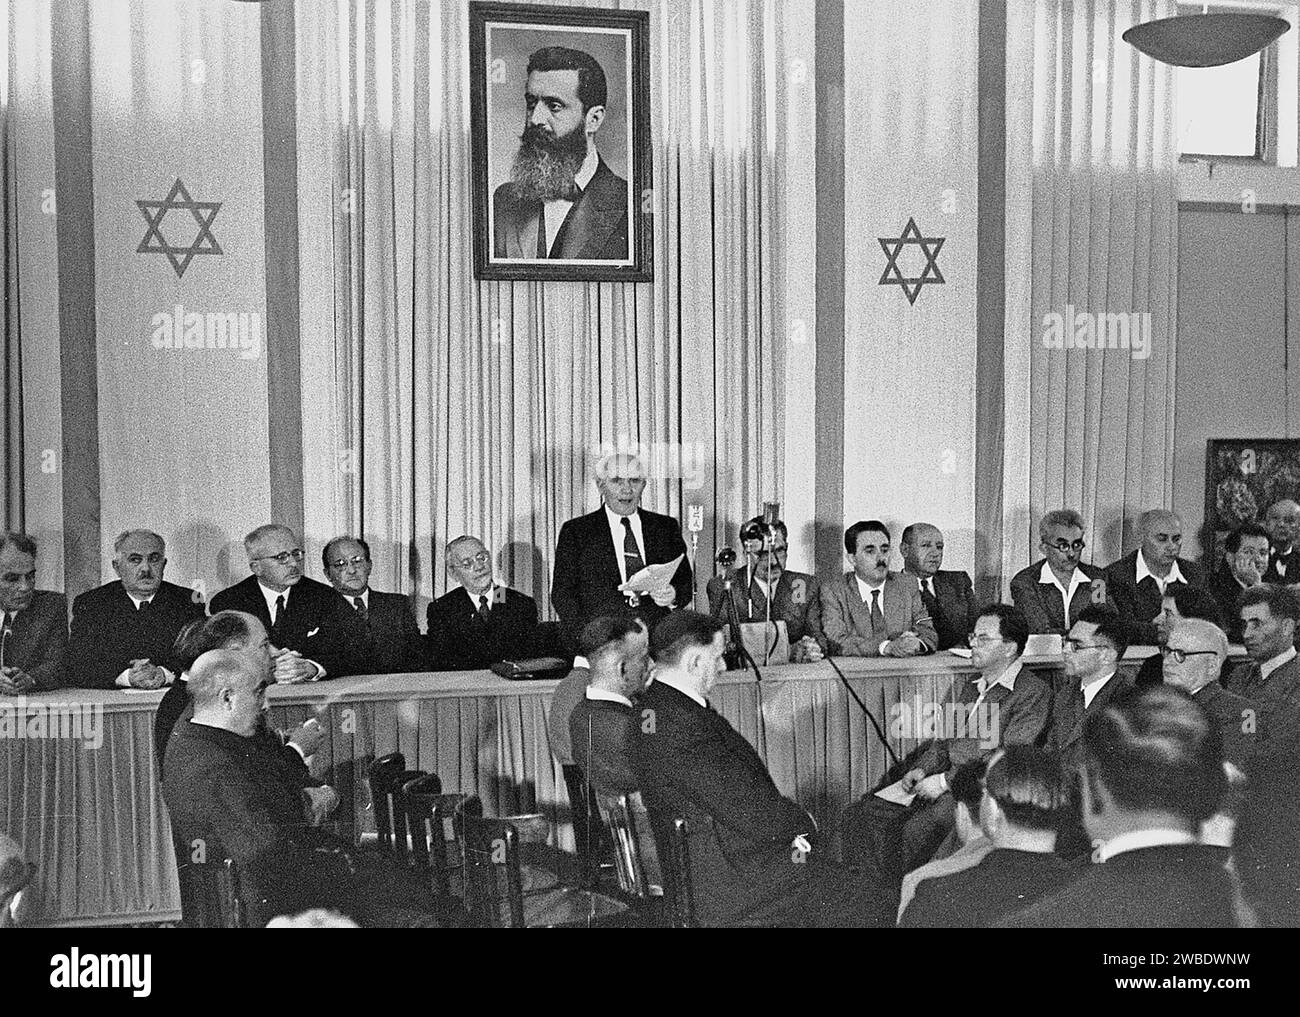 DAVID BEN GOURION, Premier ministre d'Israël annonçant la Déclaration de l'État d'Israël à tel Aviv, le 14 mai 1948. Derrière lui se trouve un portrait de Theodor Herzl Banque D'Images